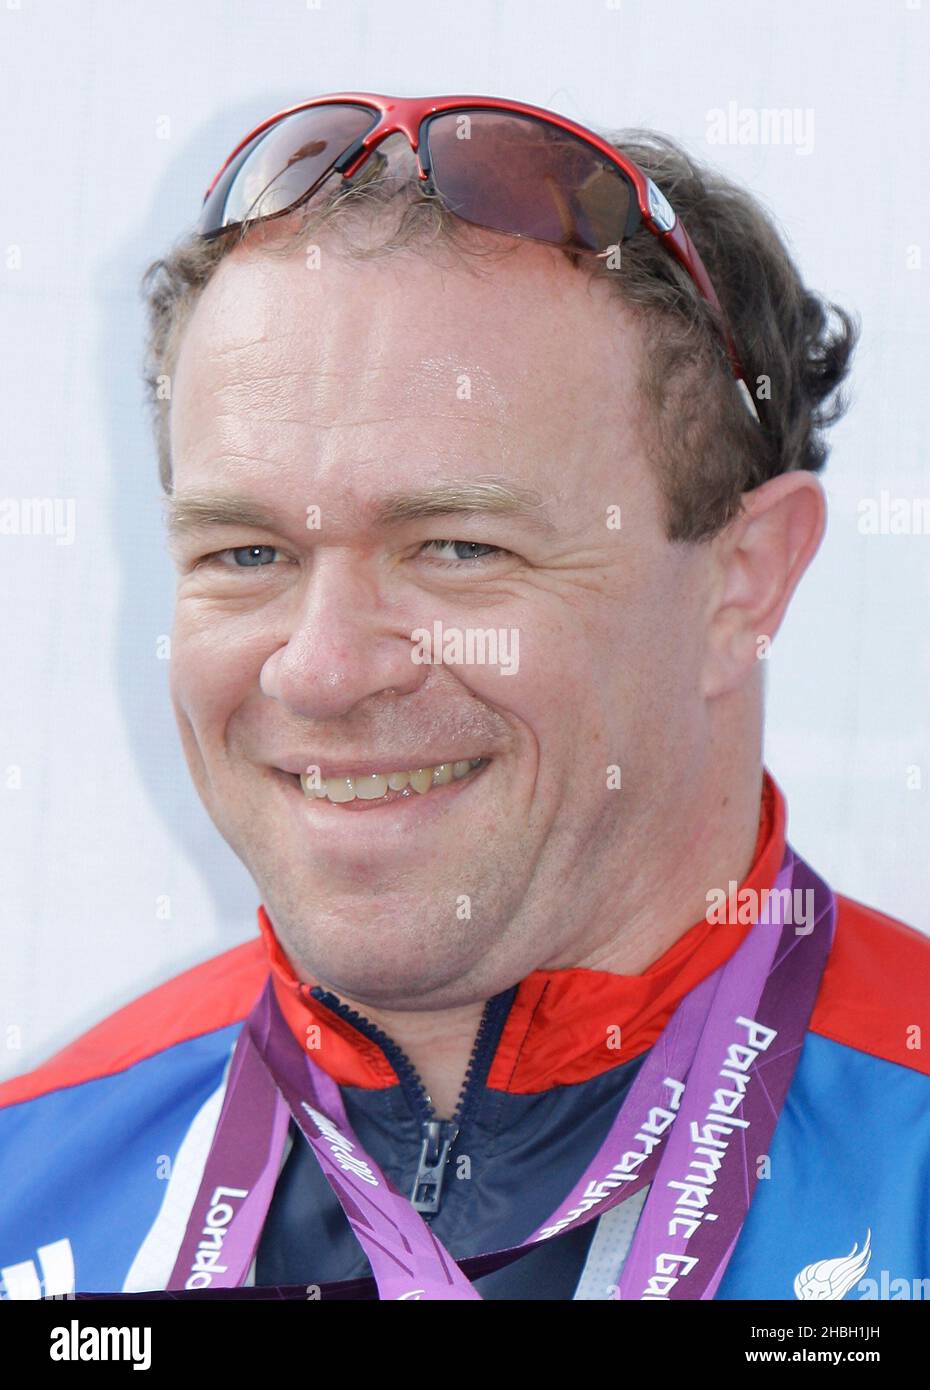 Barney Story, Goldmedaillengewinnerin für den Tandemkilometer sowie Silber im Tandem-Sprint-Radsport, während des BT London Live Concert anlässlich der Paralympischen Spiele 2012 in London im Trafalgar Square, London. Stockfoto